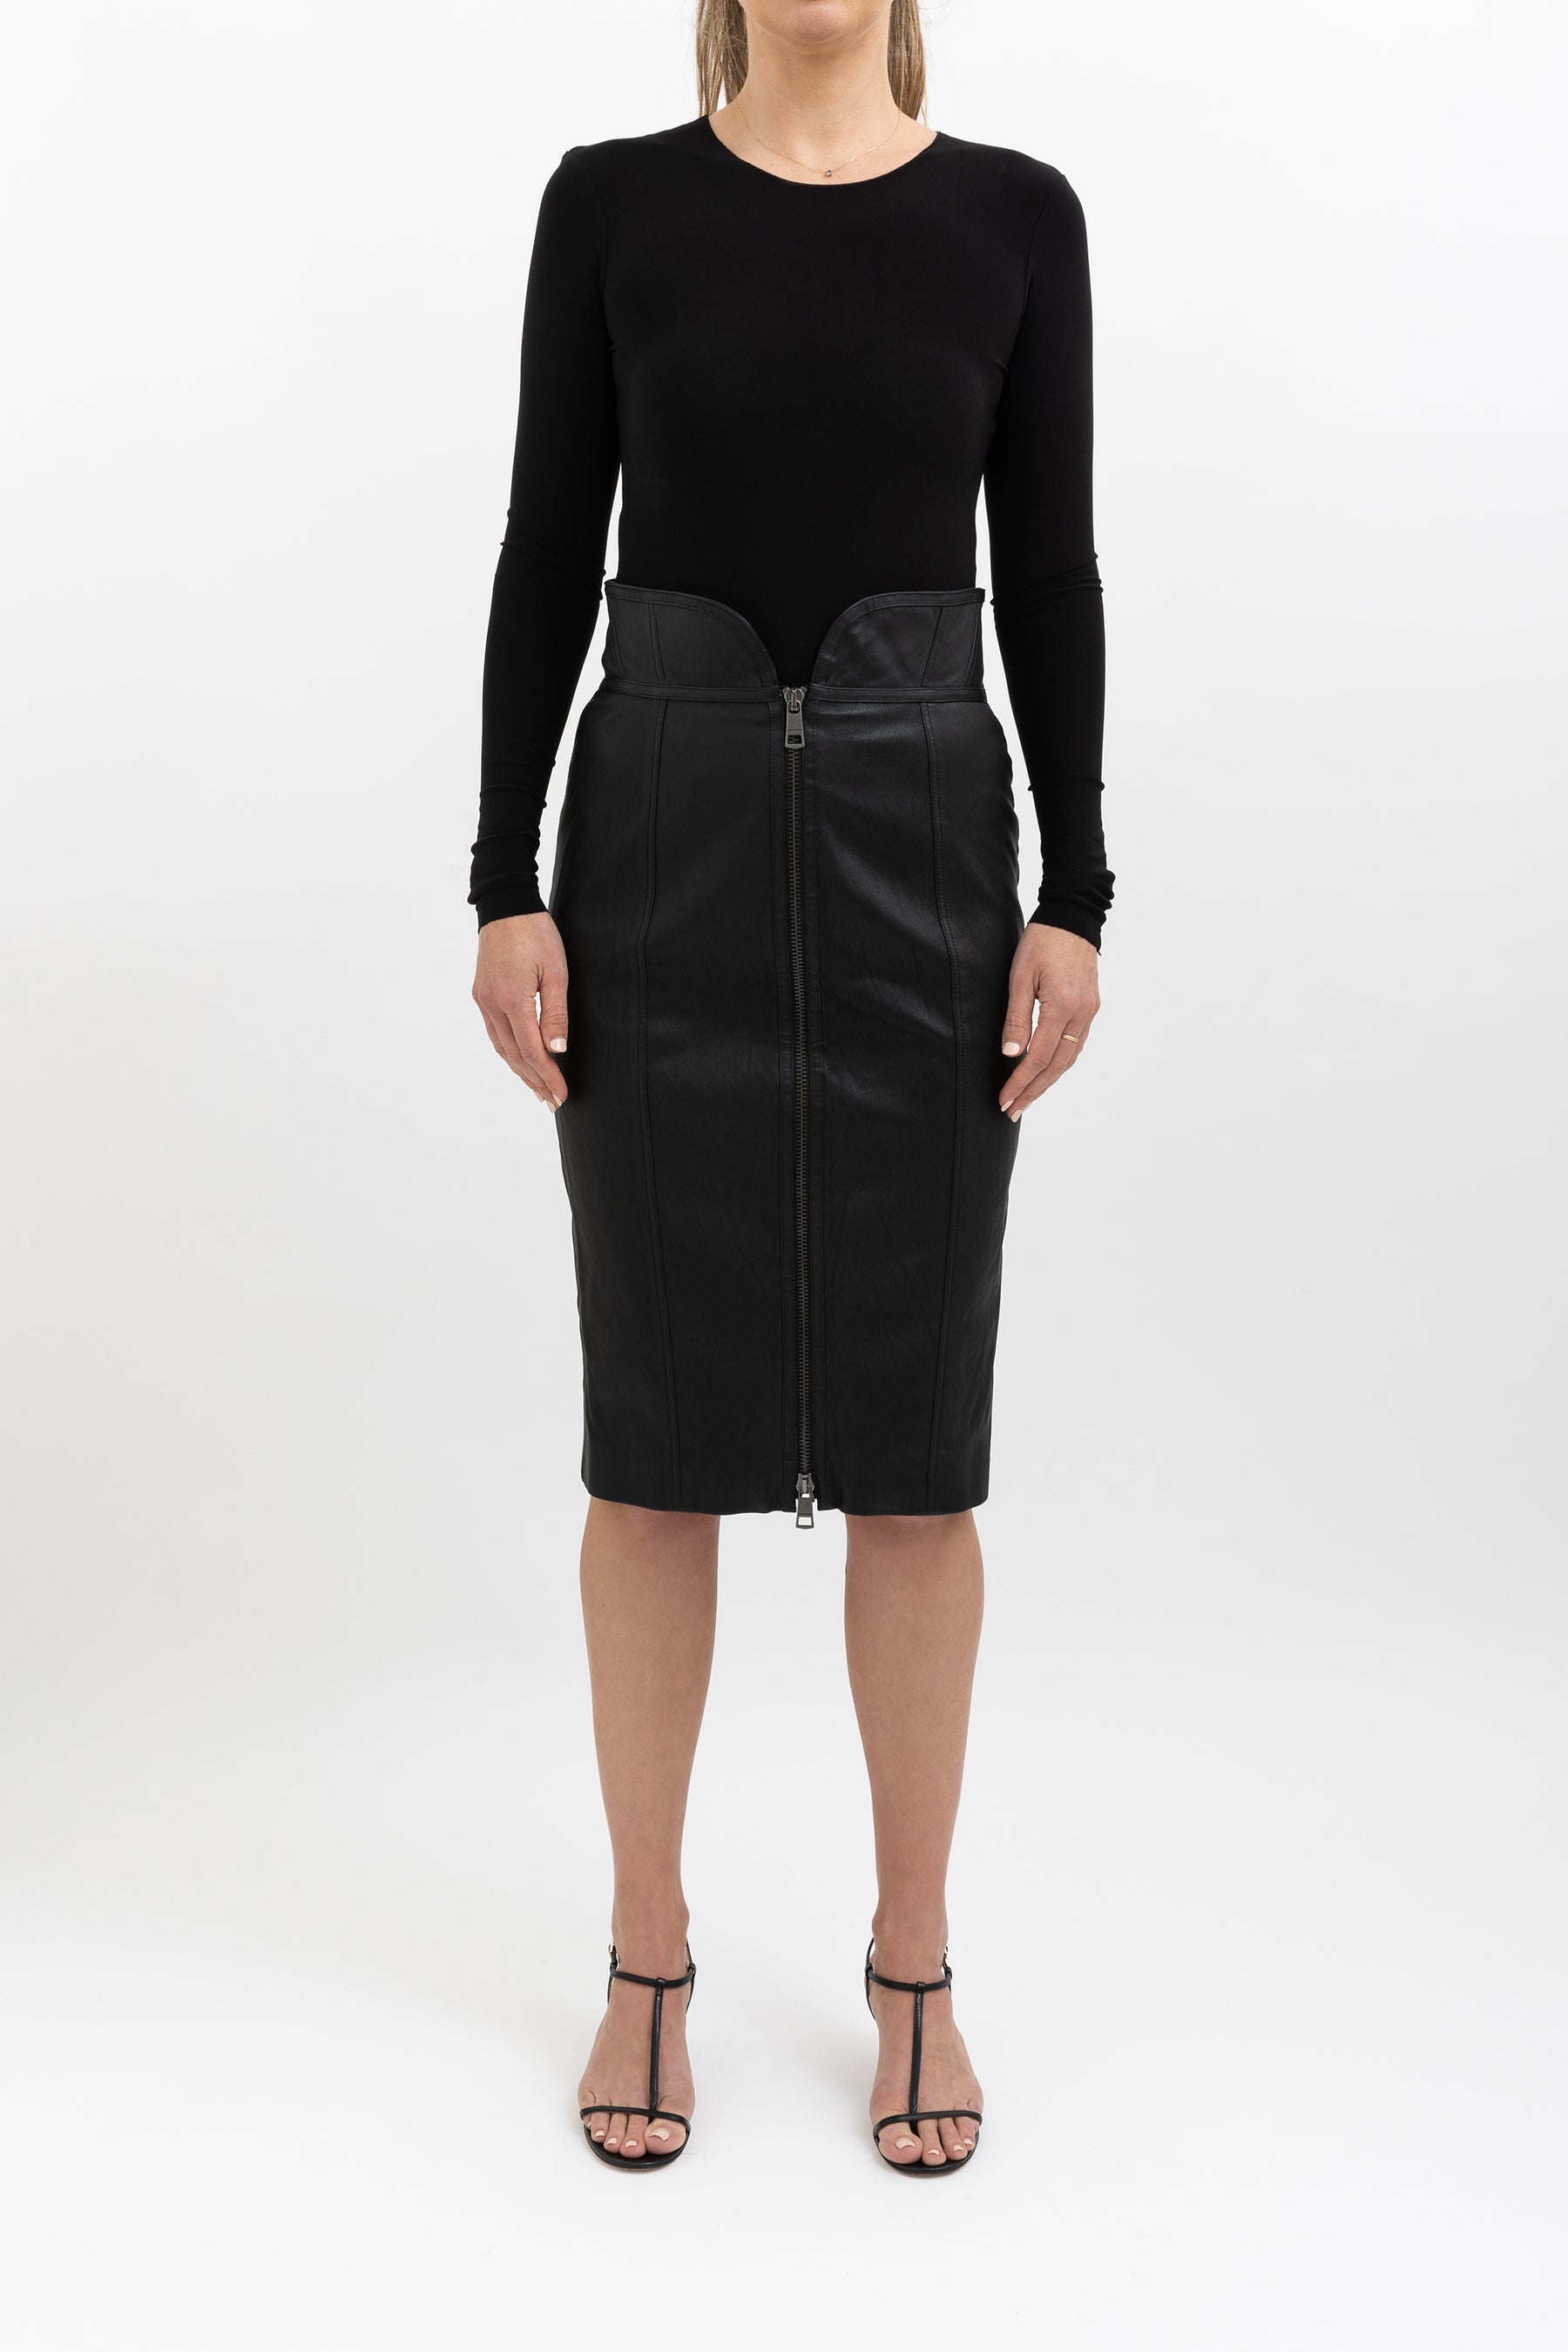 High-Waisted Leather Skirt